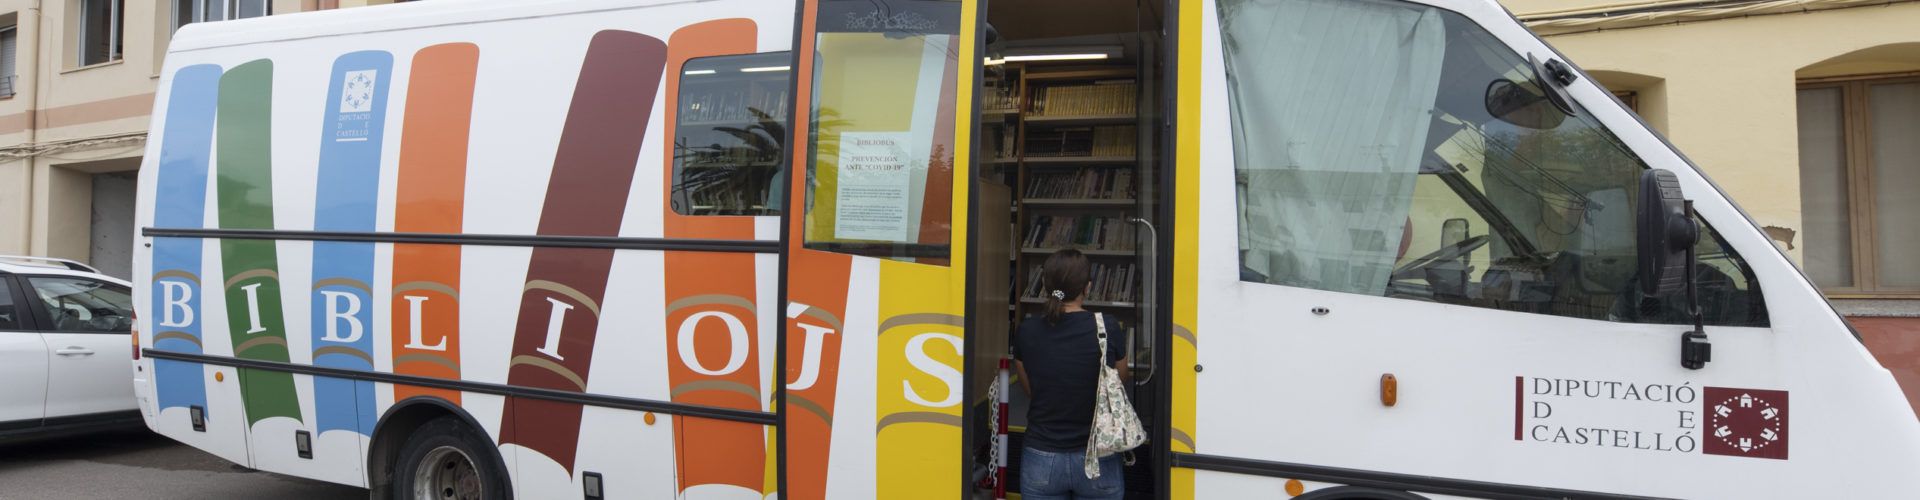 La Diputació inverteix 85.000 euros en la compra d’un microbús que permetrà duplicar el servei de Bibliobús a la província de Castelló